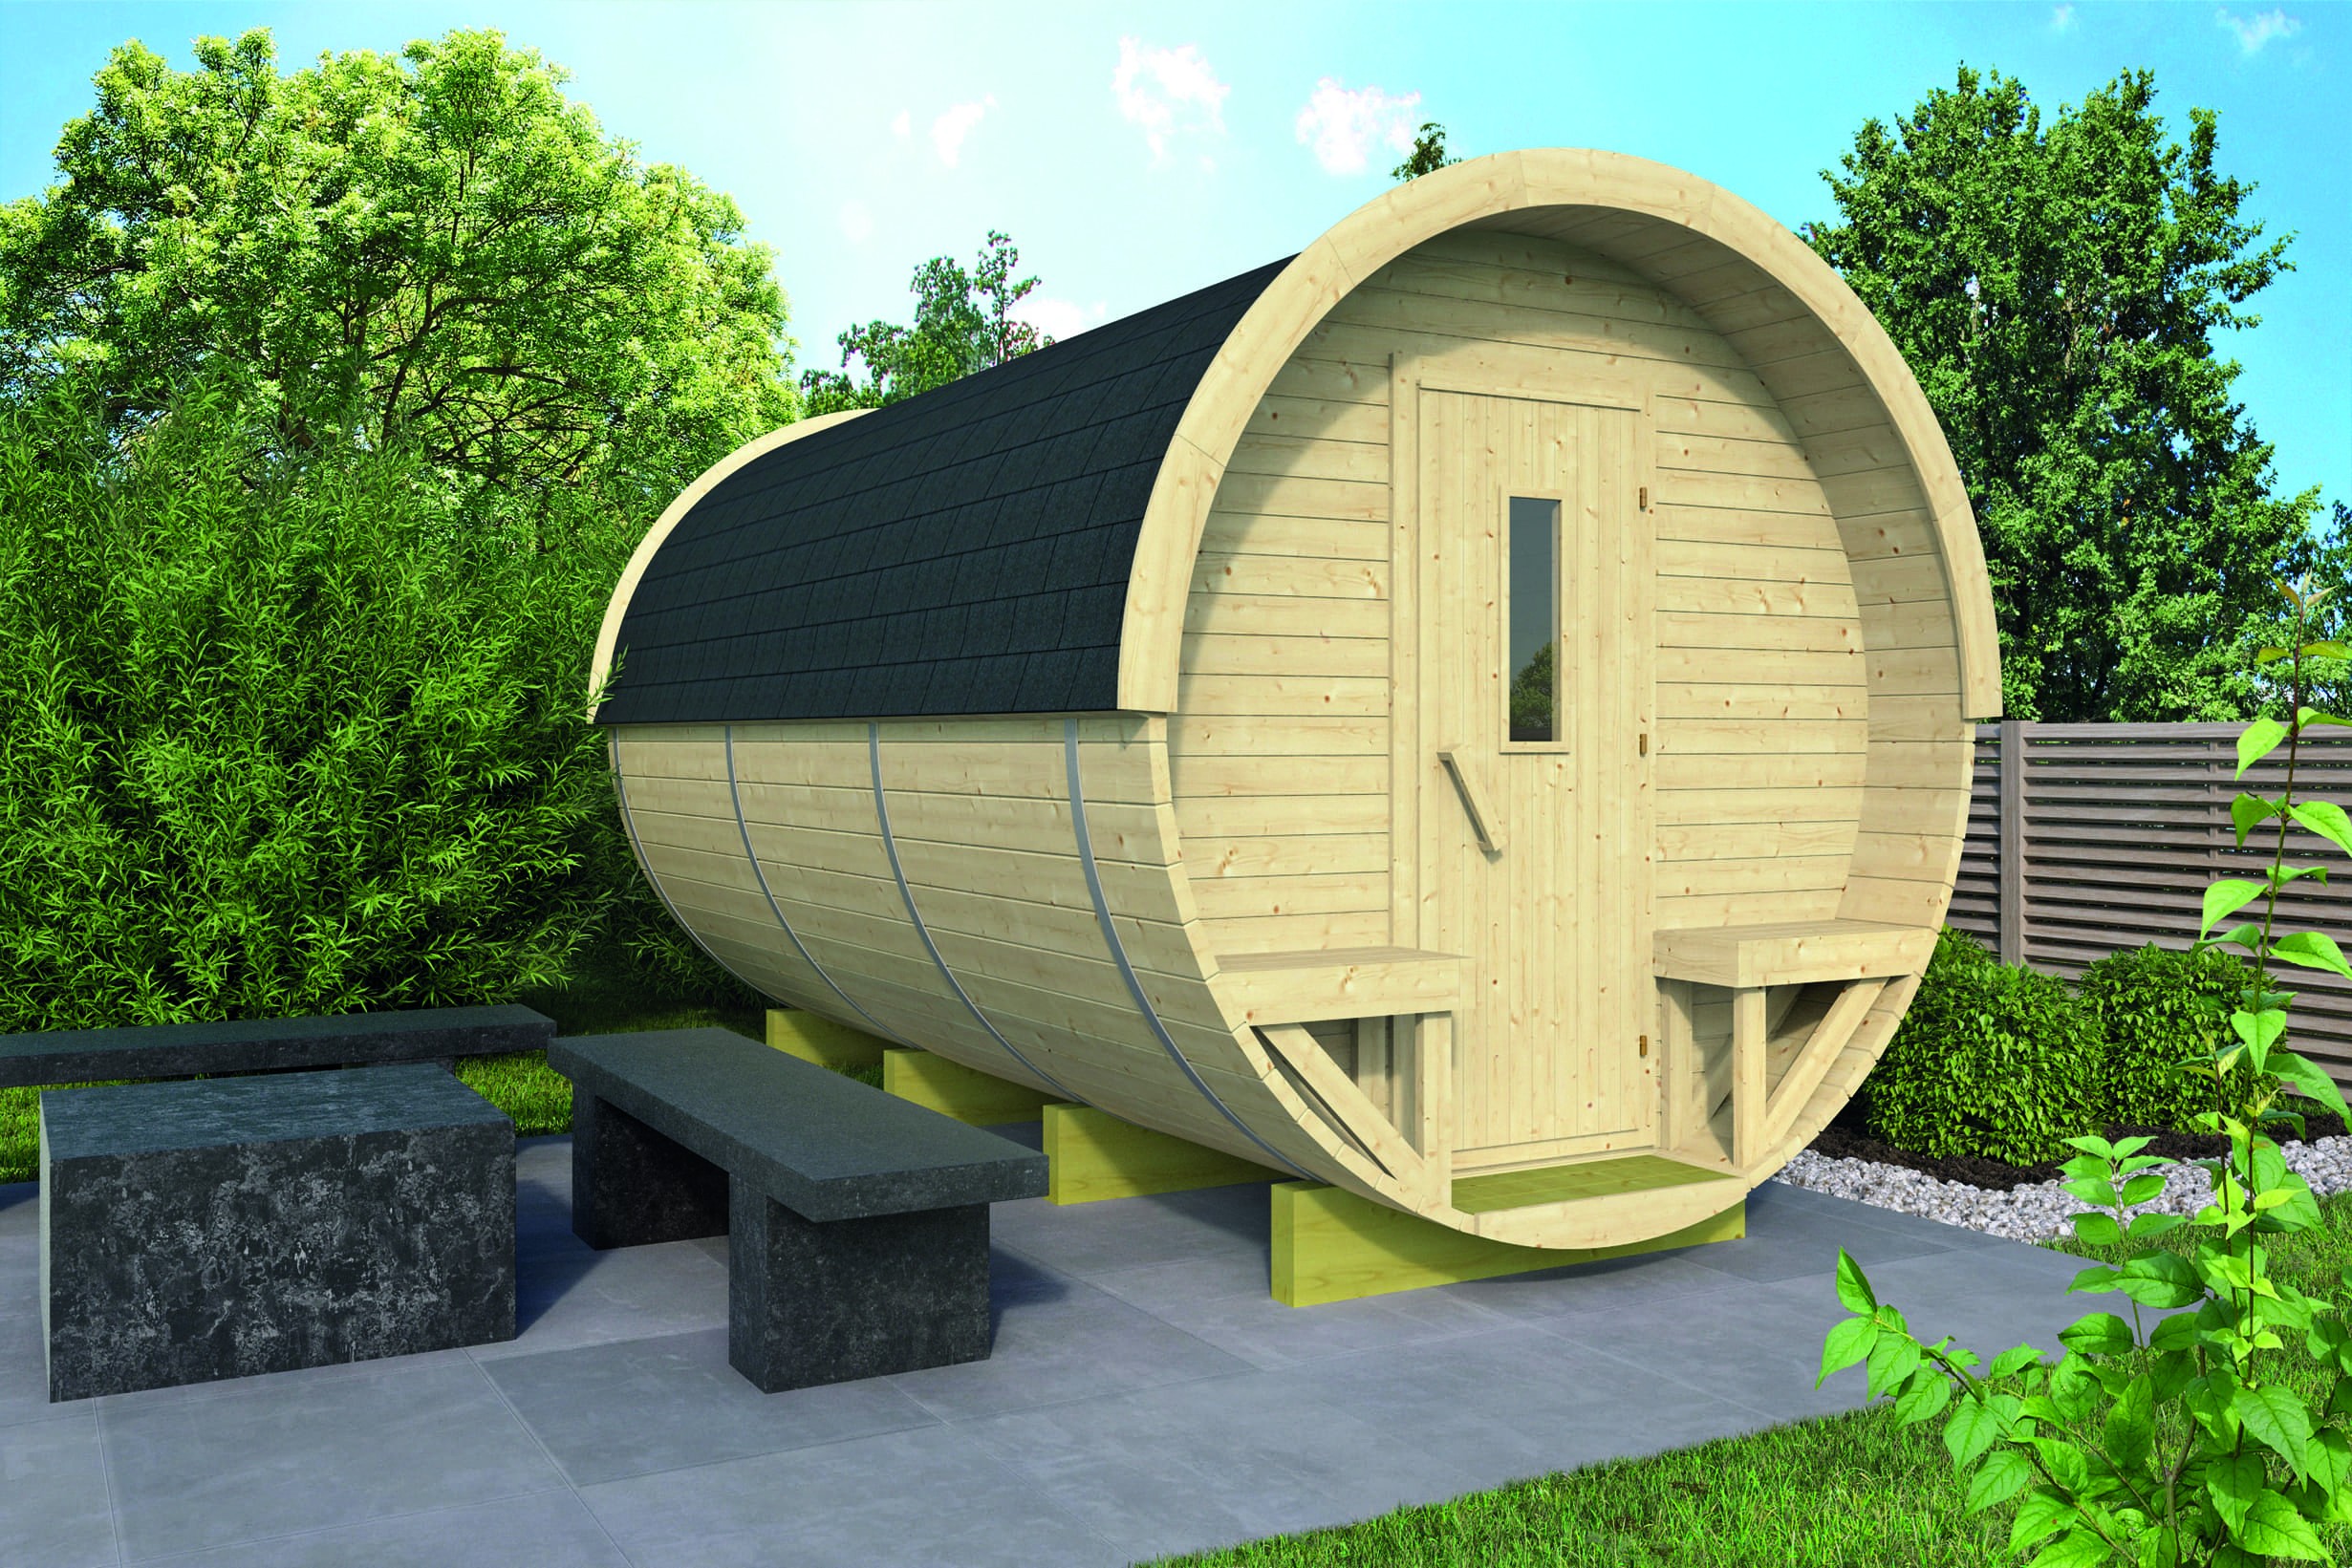 Zahradní domek Camping Barrel